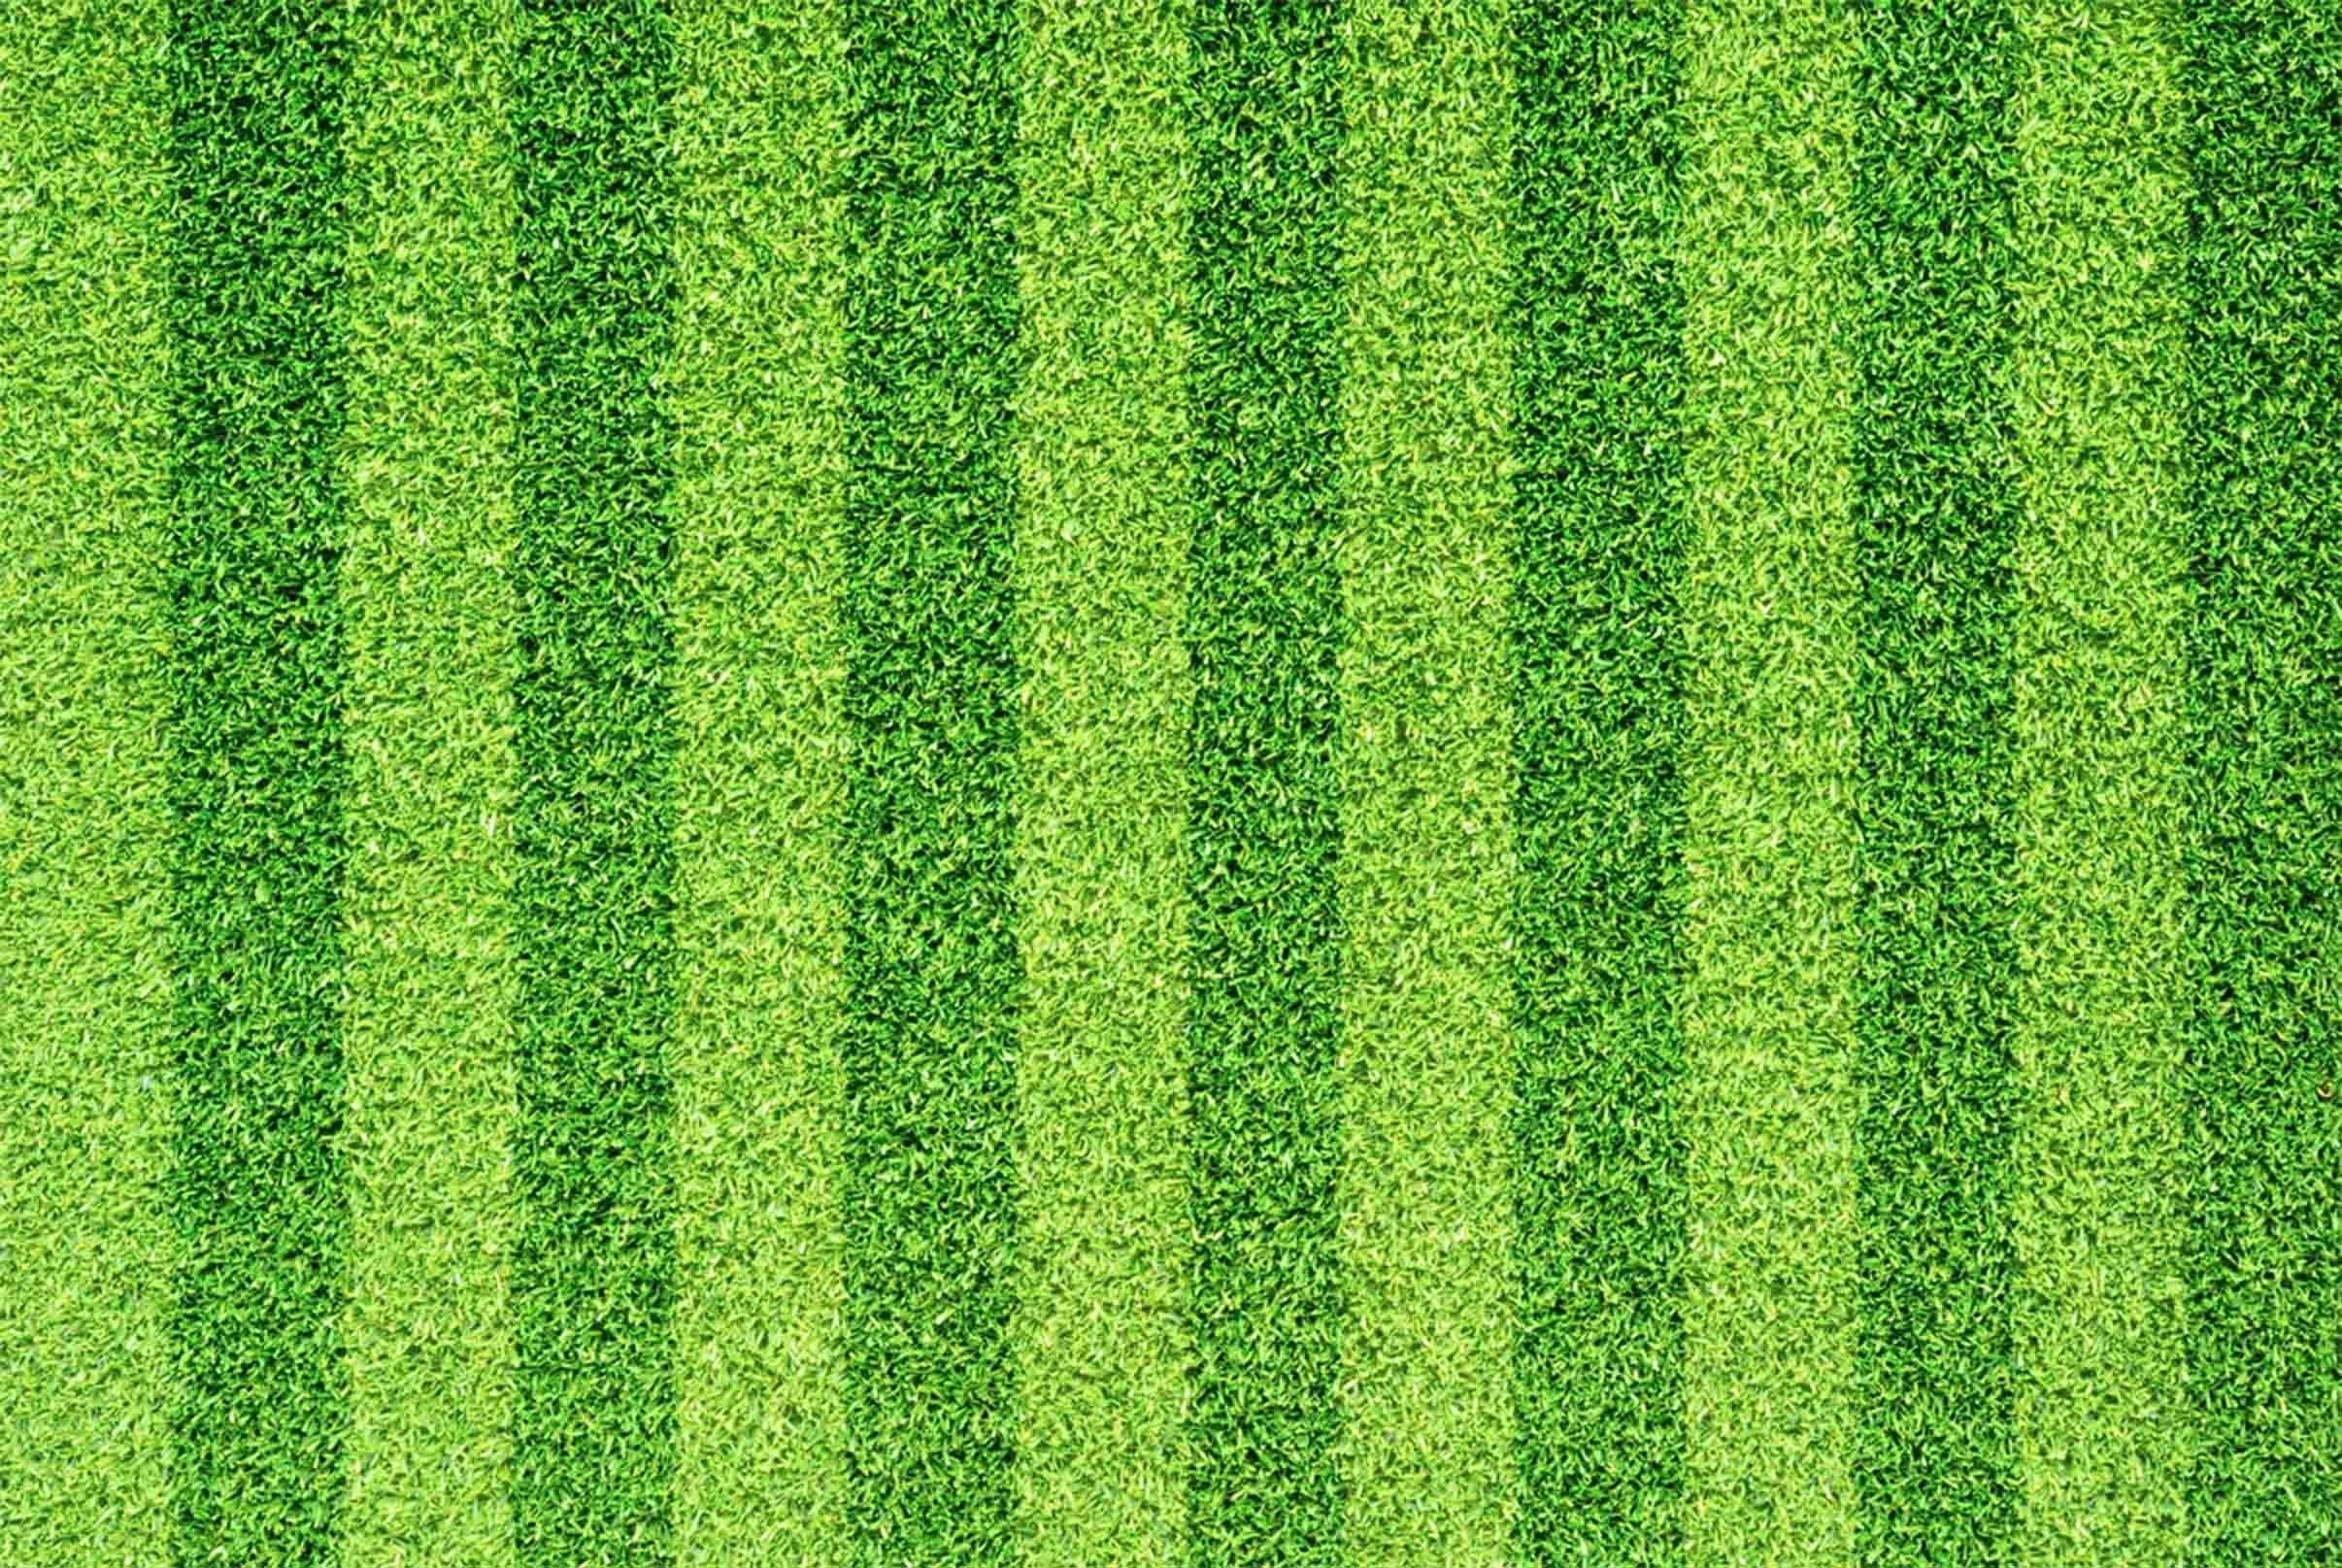 3D Grass Stripes Kitchen Mat Floor Mural Wallpaper AJ Wallpaper 